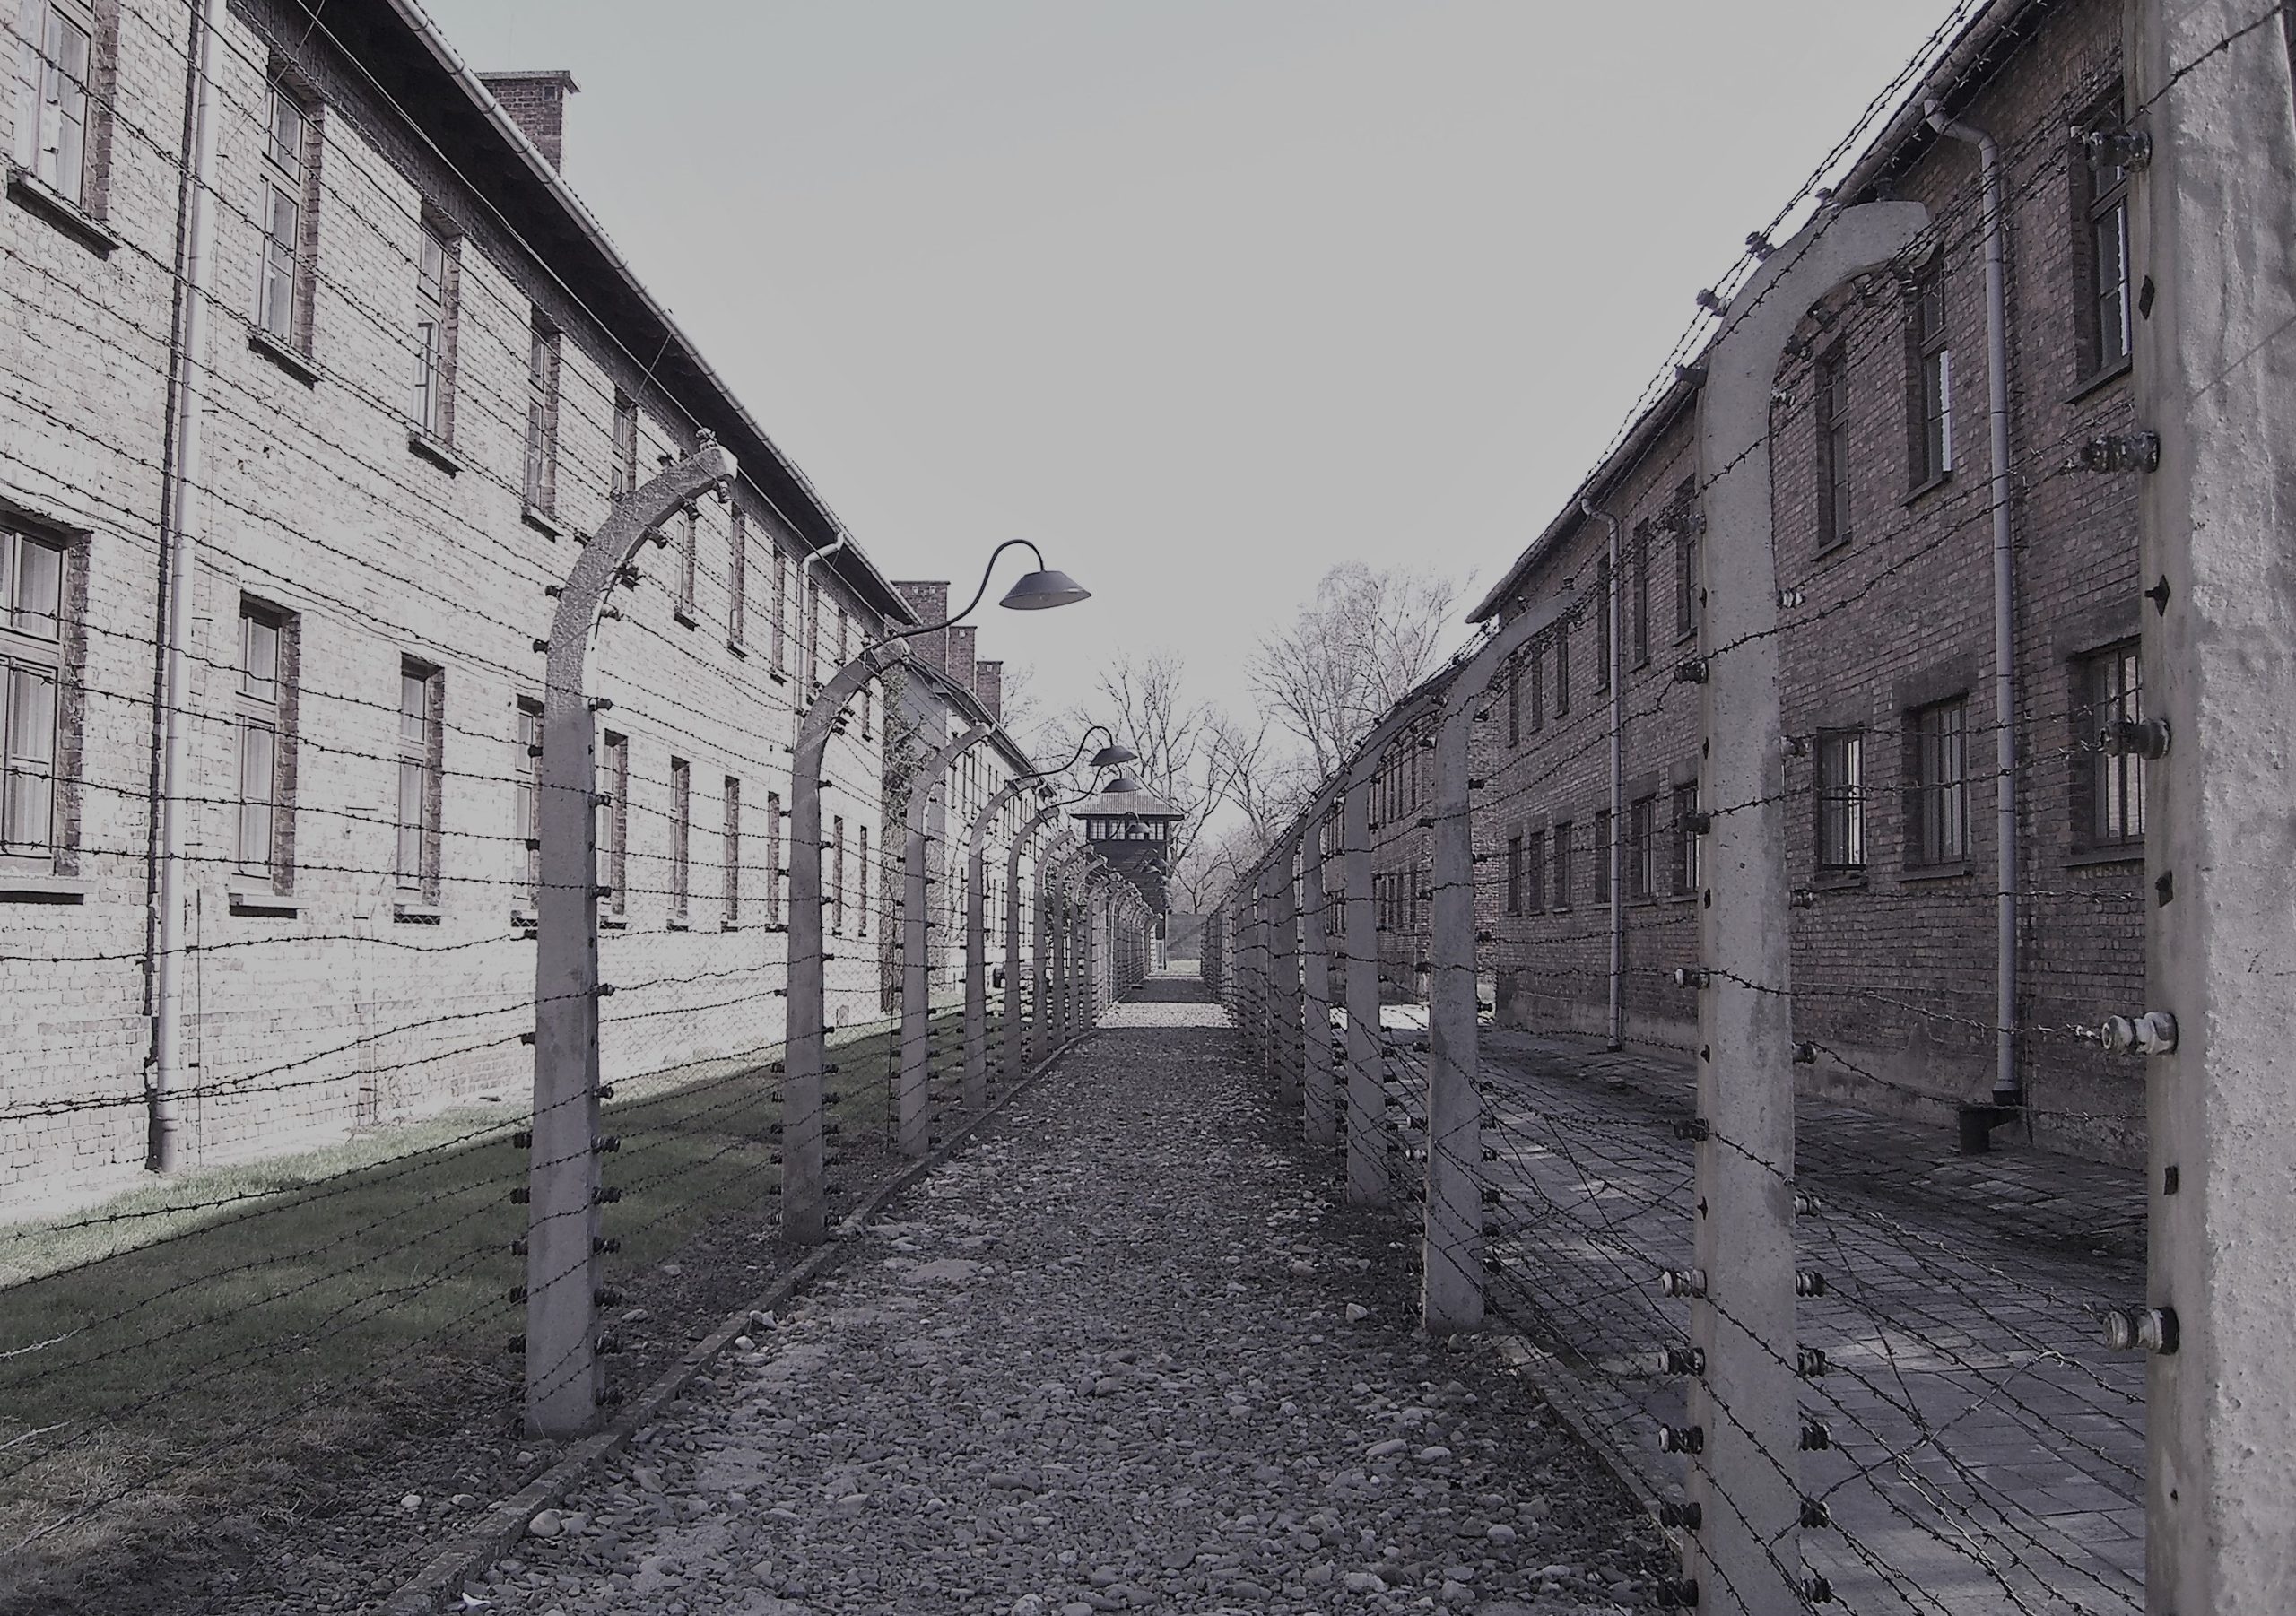 アウシュヴィッツ強制絶滅収容所跡の画像。
左右にレンガ造りの建物。その間に両側を鉄条網で囲われた小道が写っています。